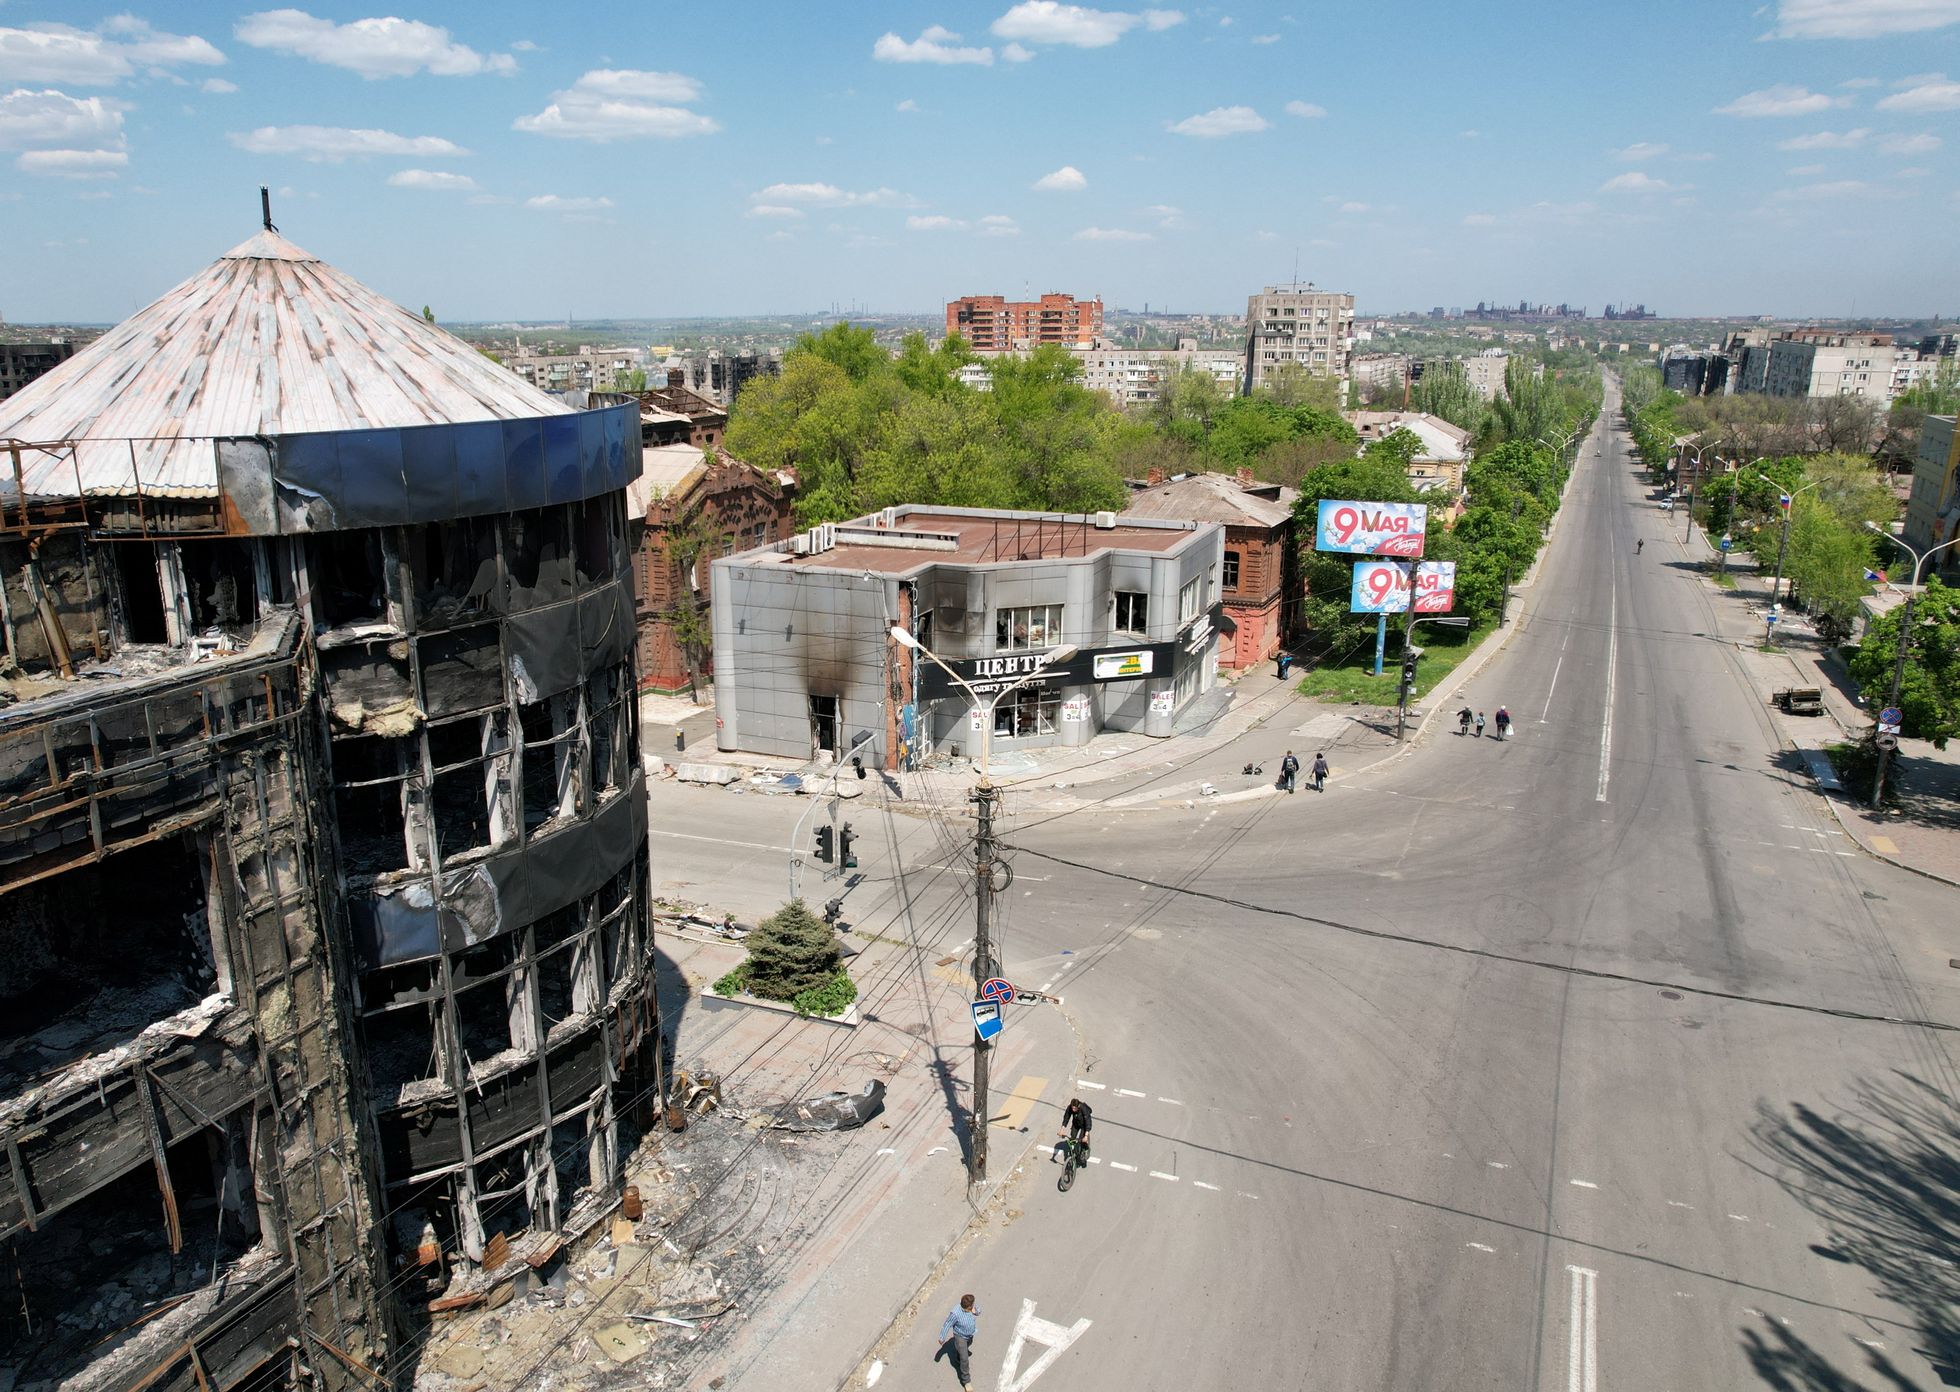 Purustatud hooned tänava ääres Mariupolis, kuhu olid tänaseks üles seatud võidupüha meenutavad plakatid.